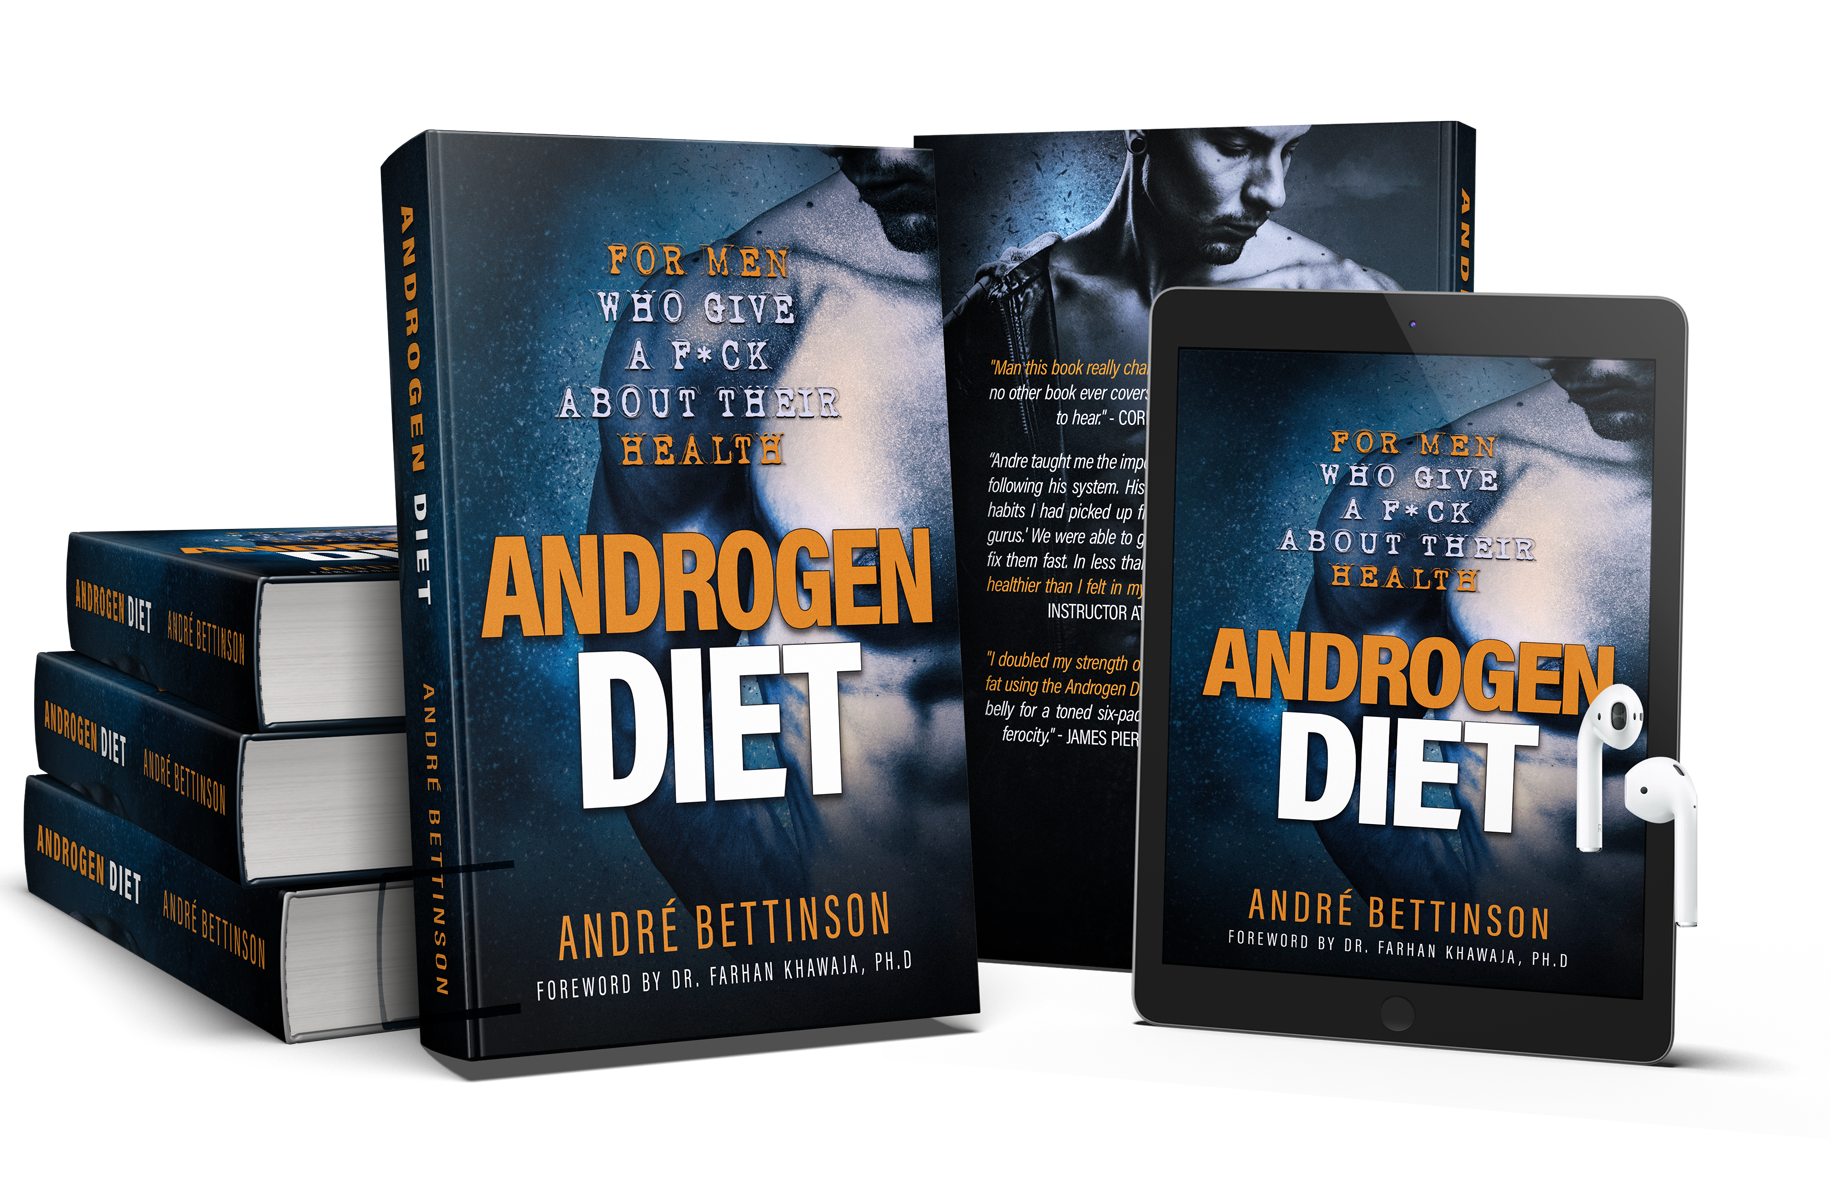 androgen diet book